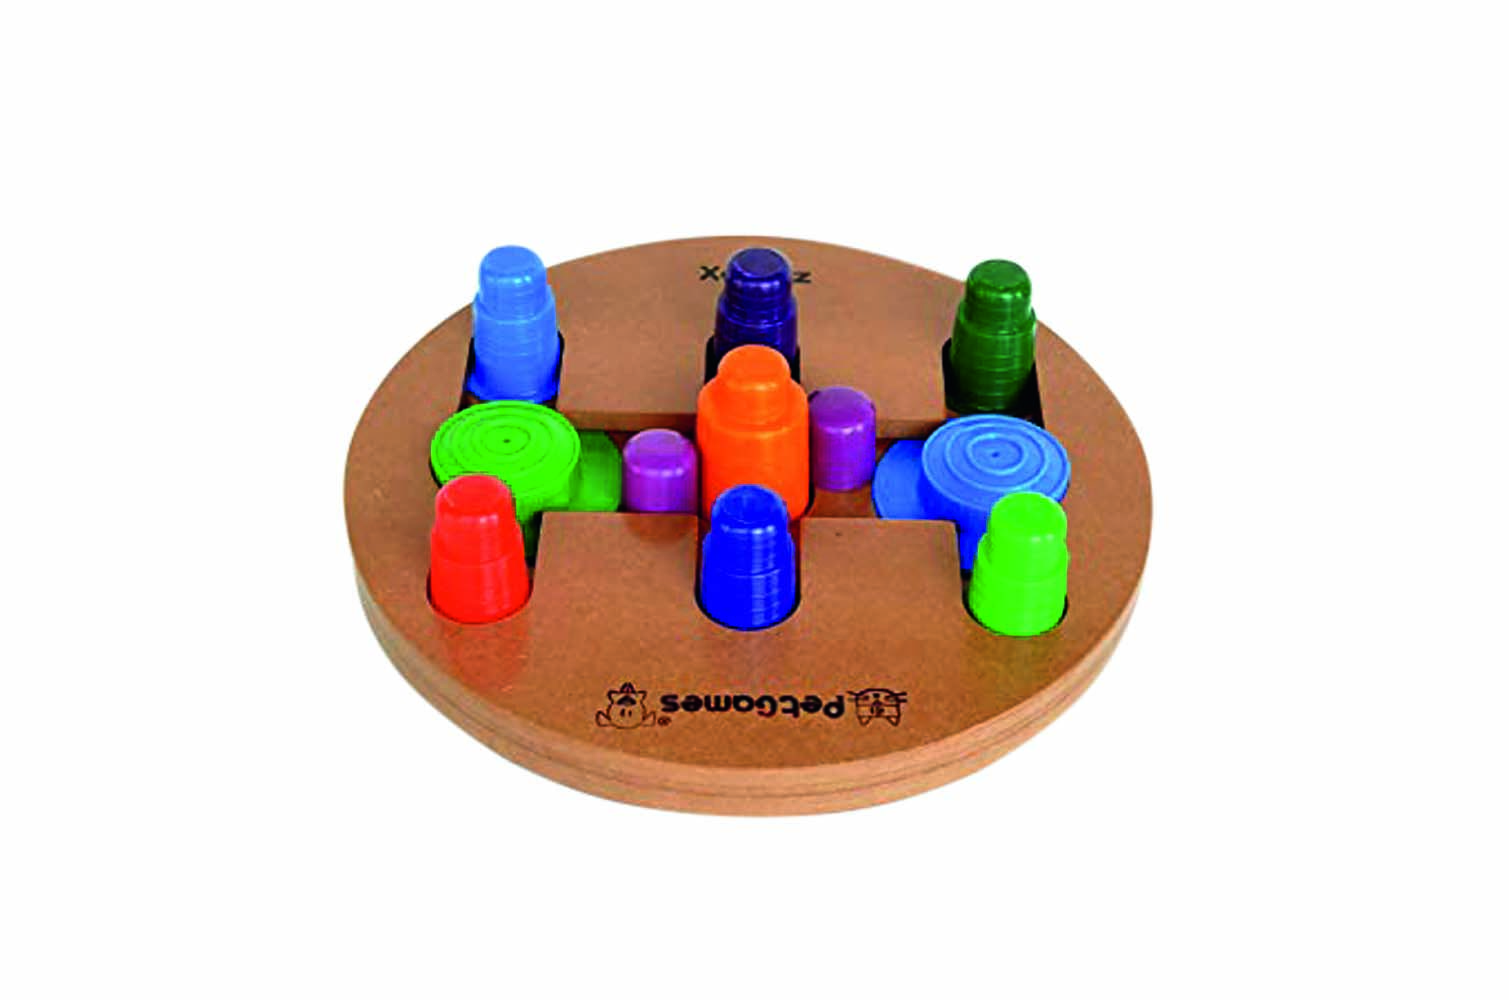 Brinquedo interativo feito com base de madeira. Em cima da base, pinos coloridos de diferentes tamanhos se espalham pelo centro e extremidades do círculo